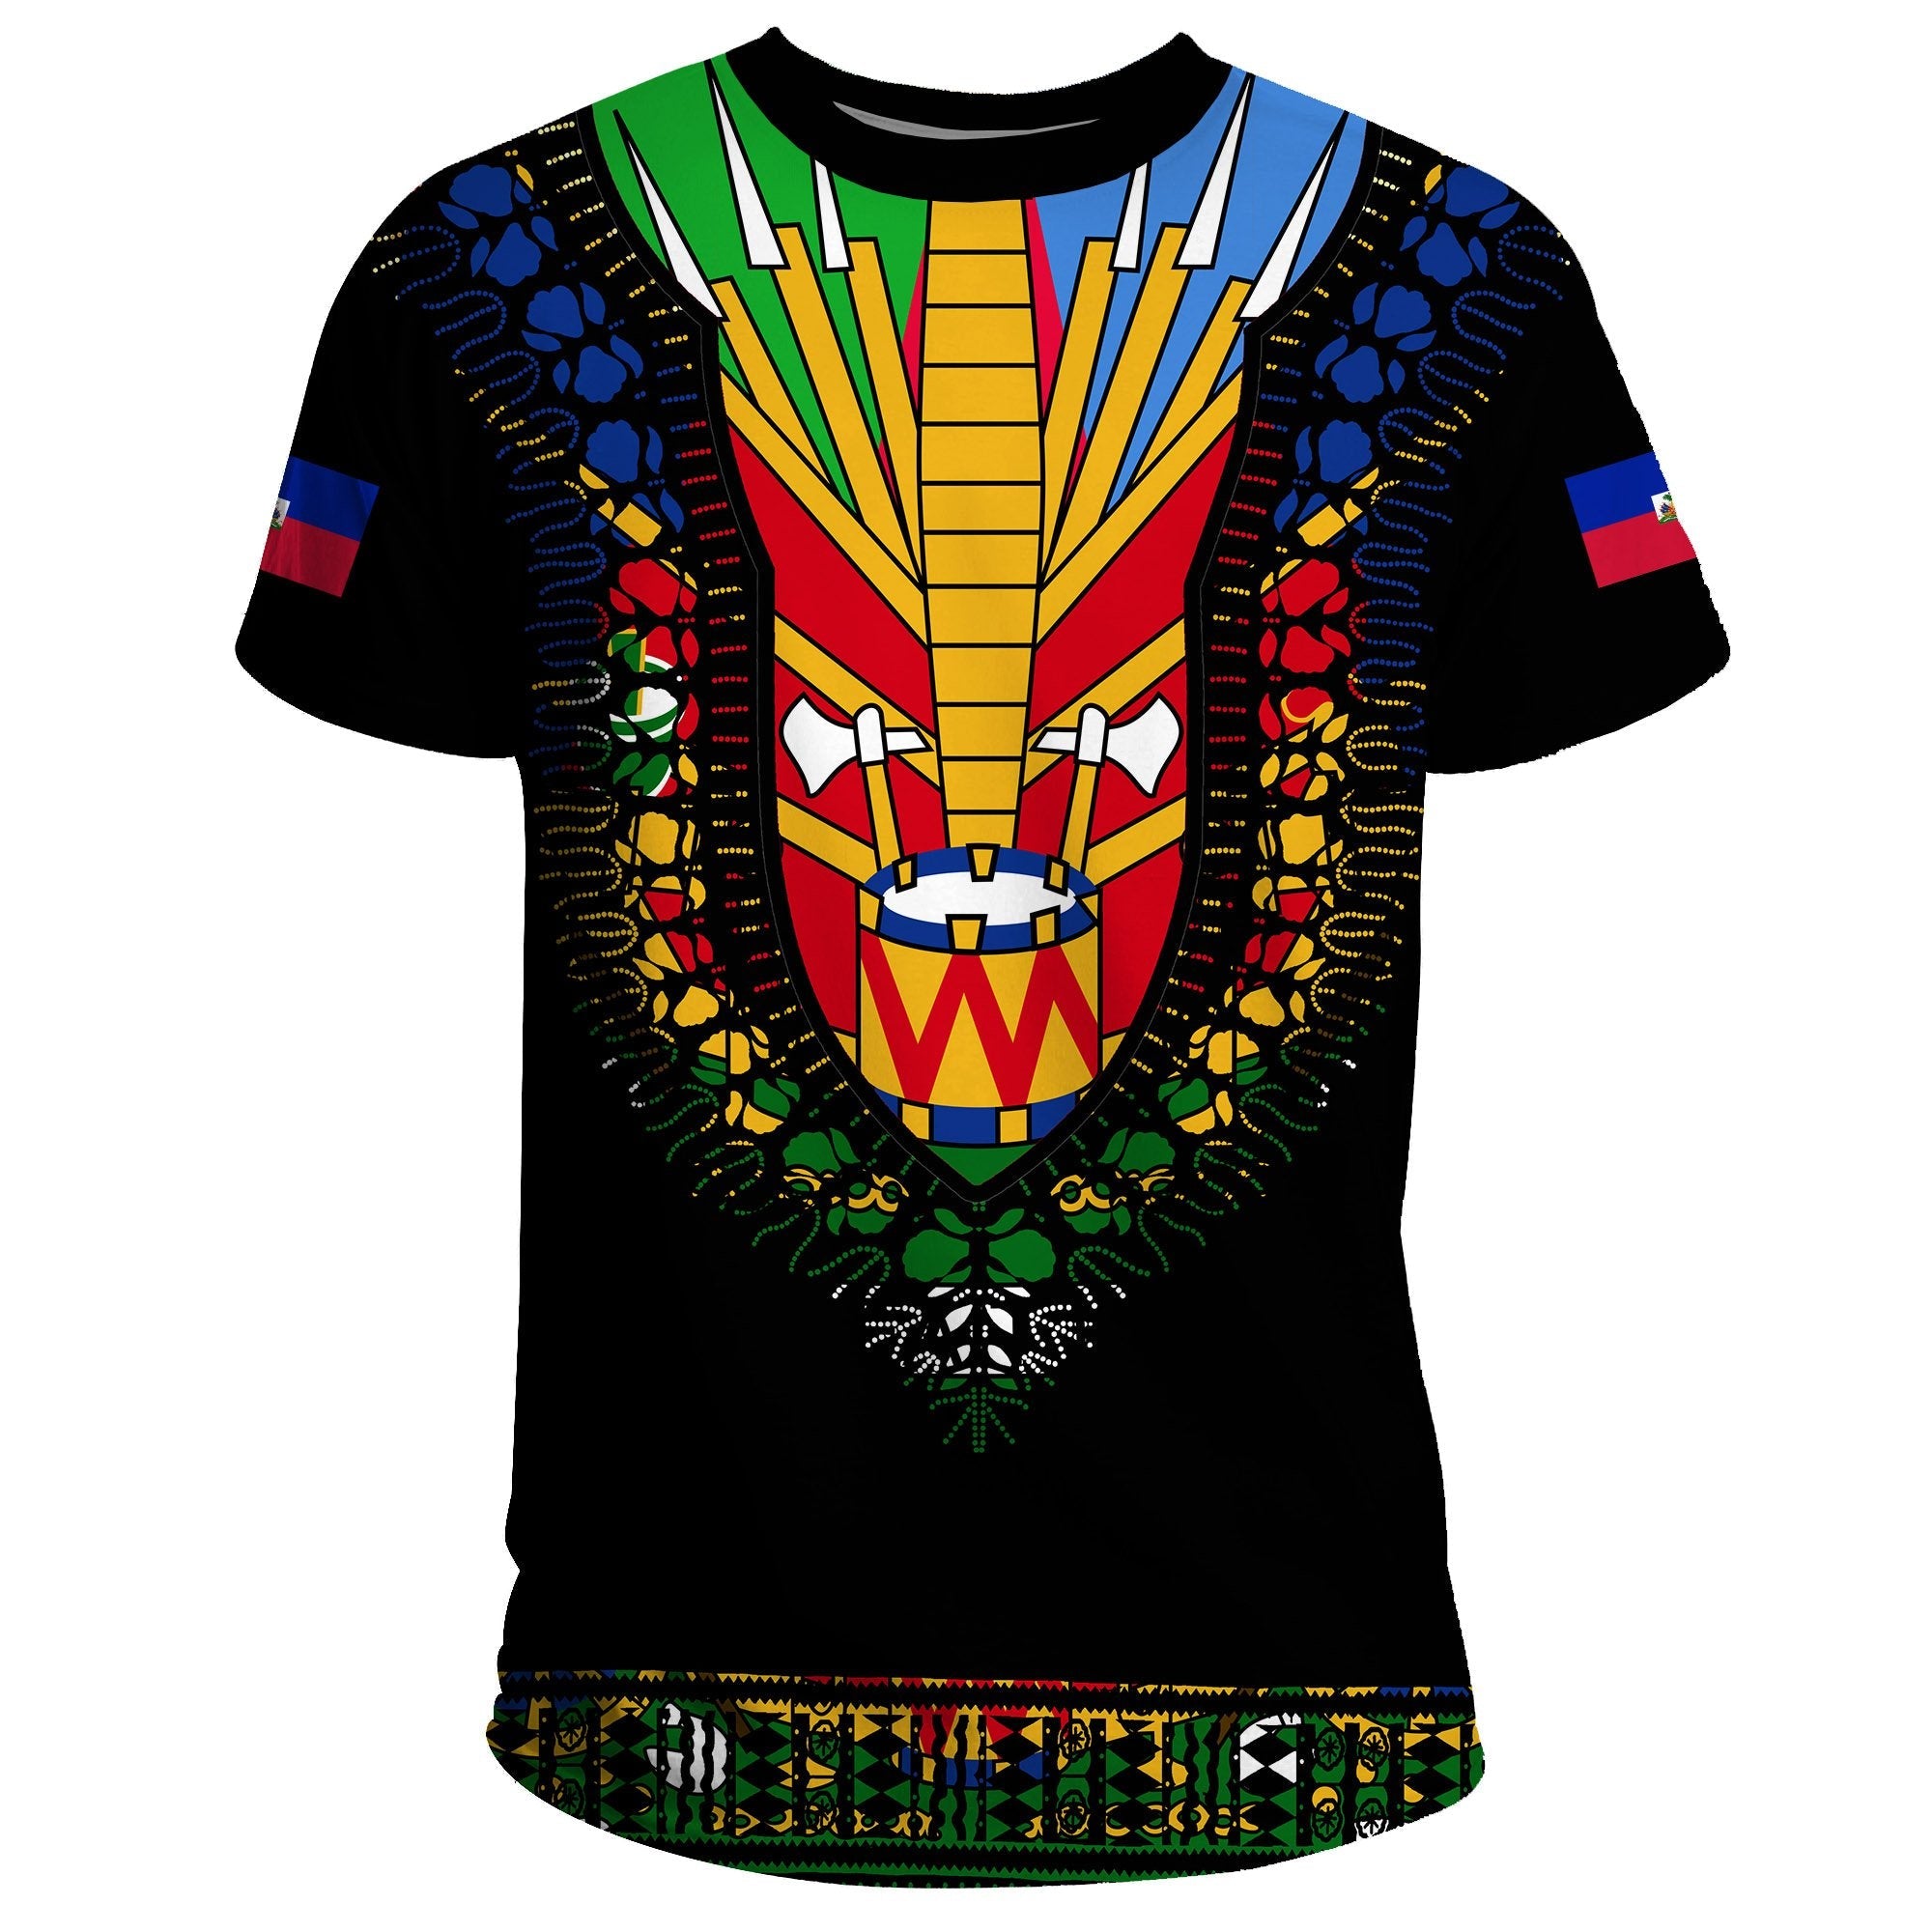 haiti-t-shirt-dashiki-pattern